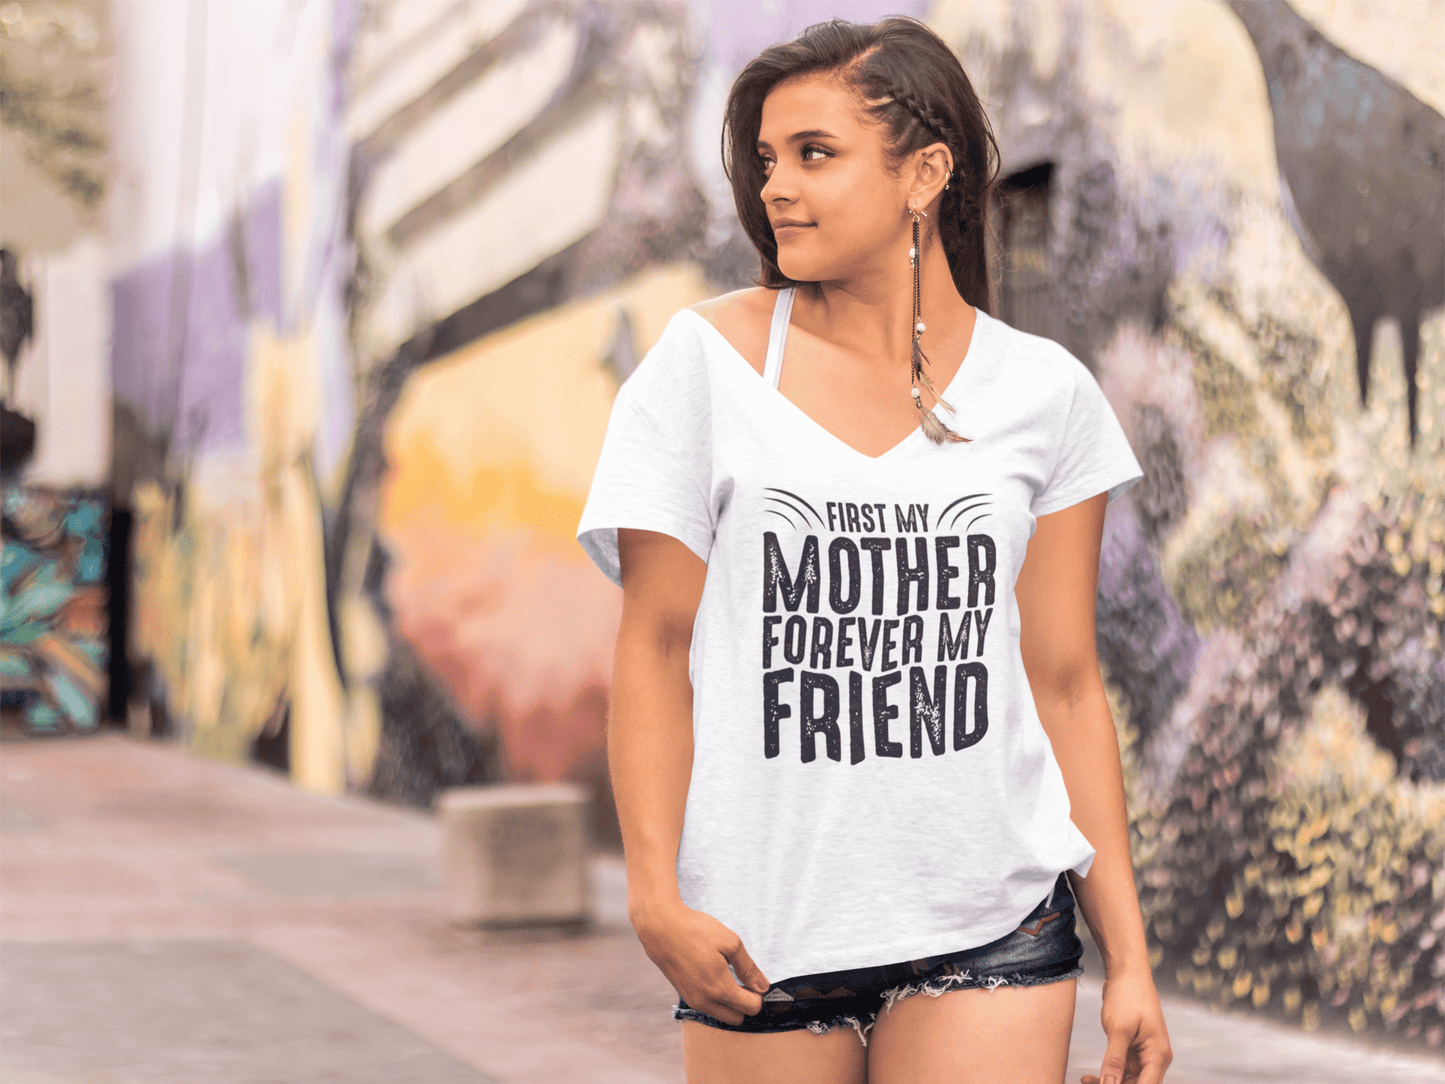 ULTRABASIC Women's T-Shirt First My Mother Forever My Friend - Short Sleeve Tee Shirt Tops